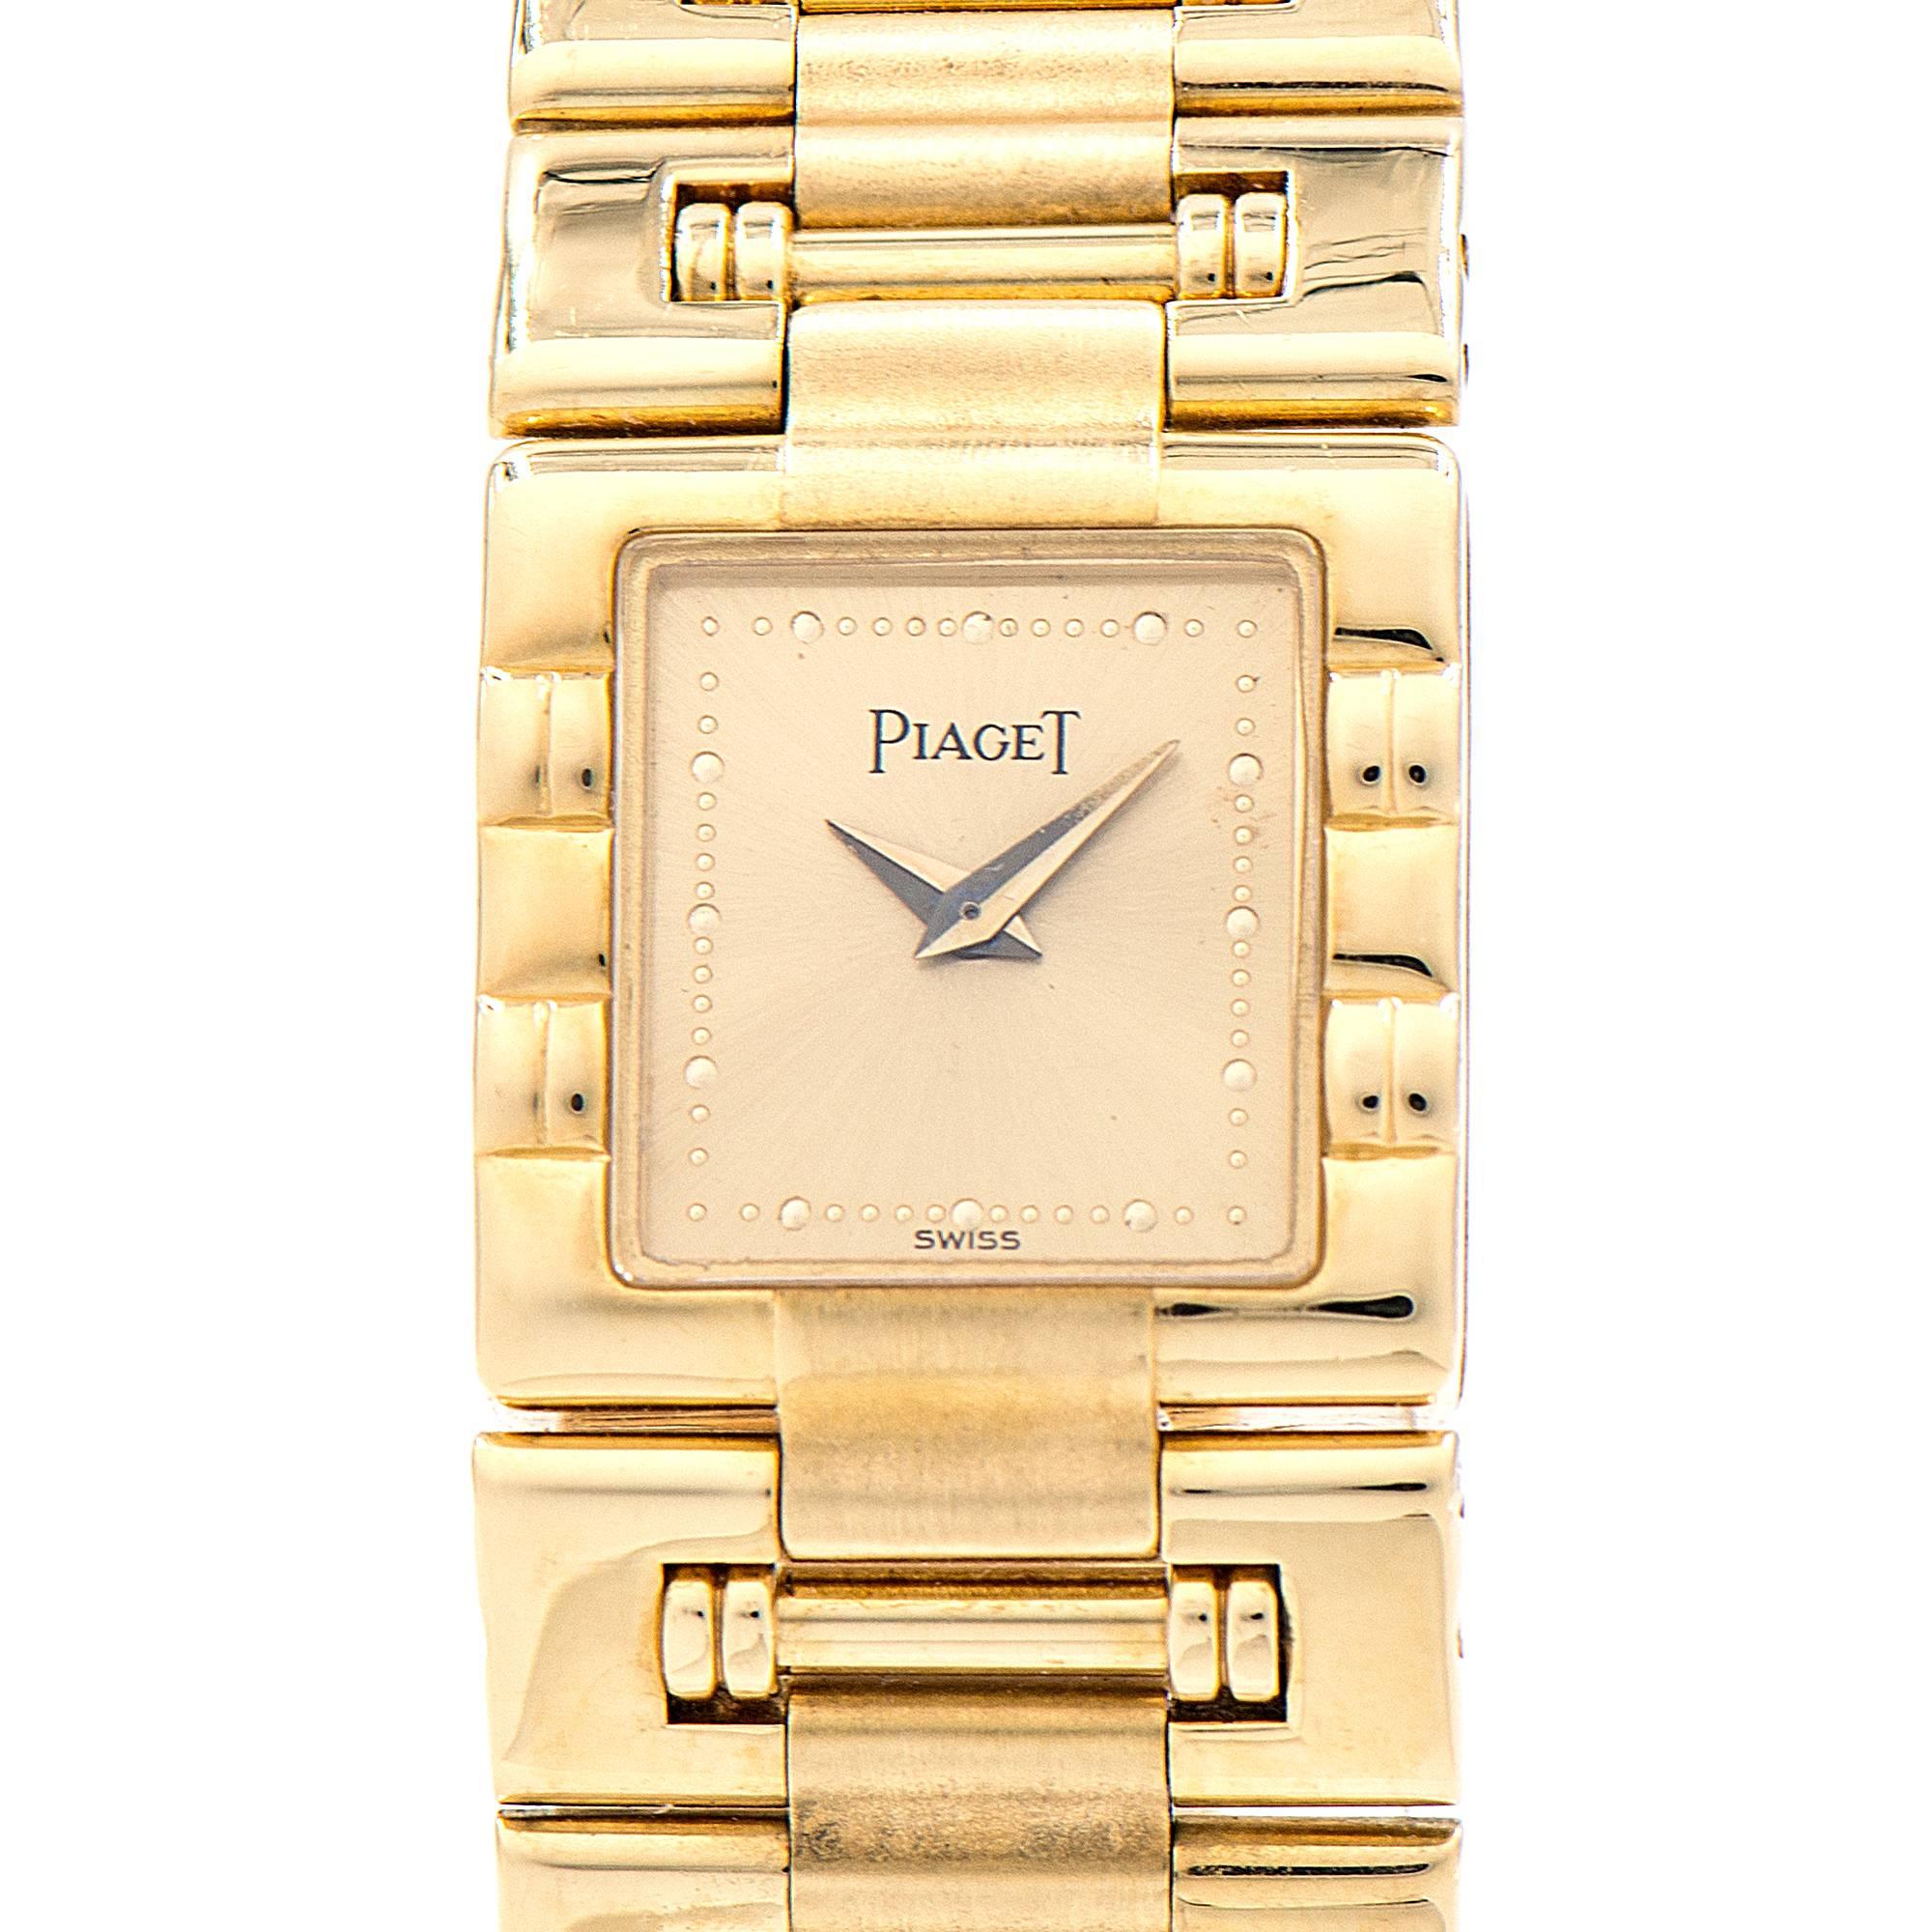 piaget quartz gold watch